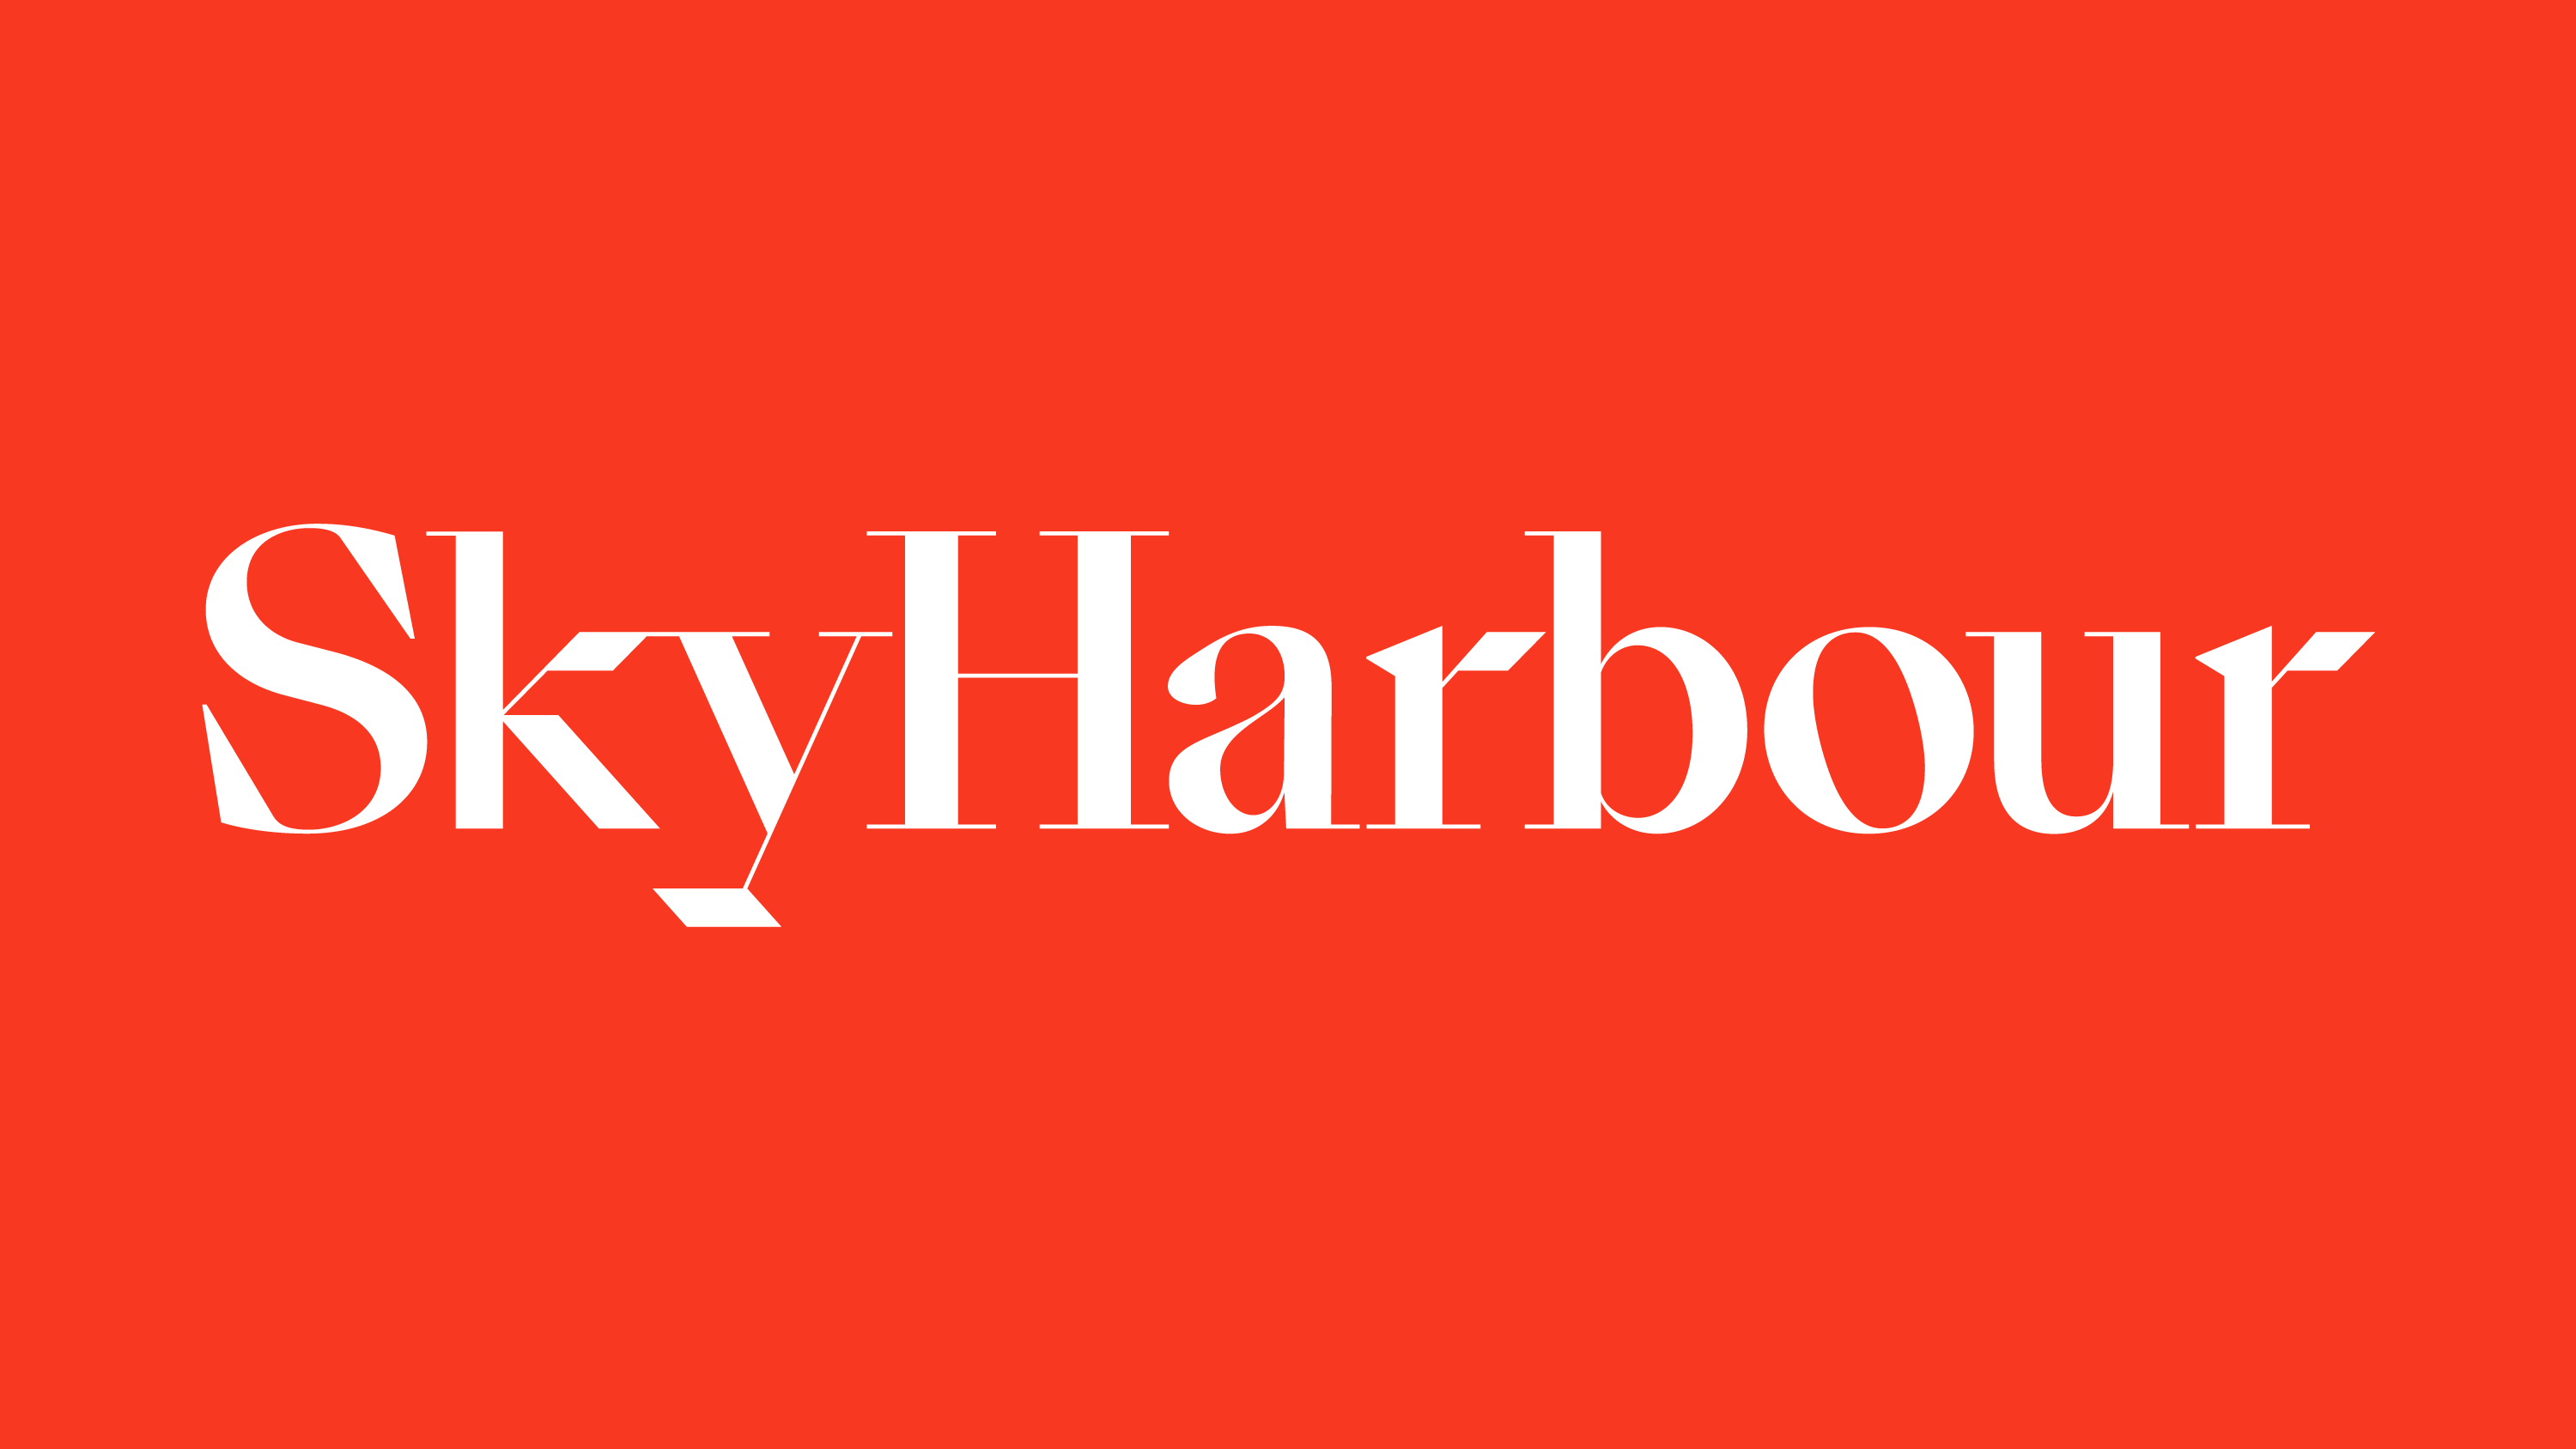 Sky Harbour logo